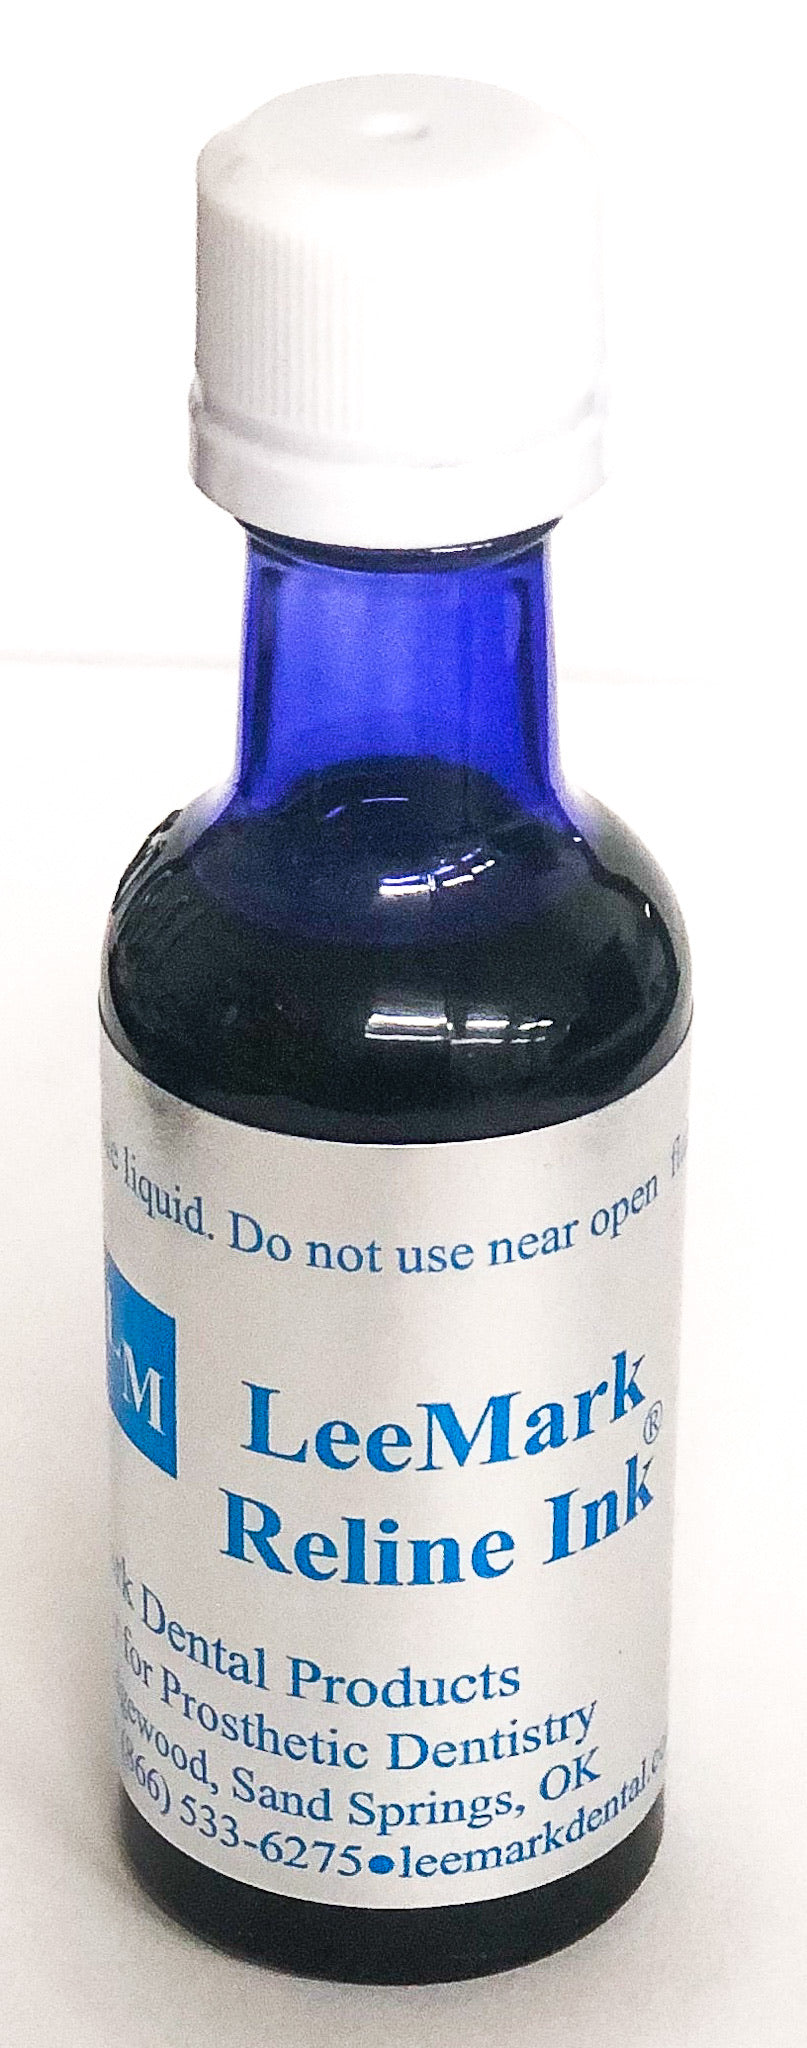 LeeMark Reline Ink